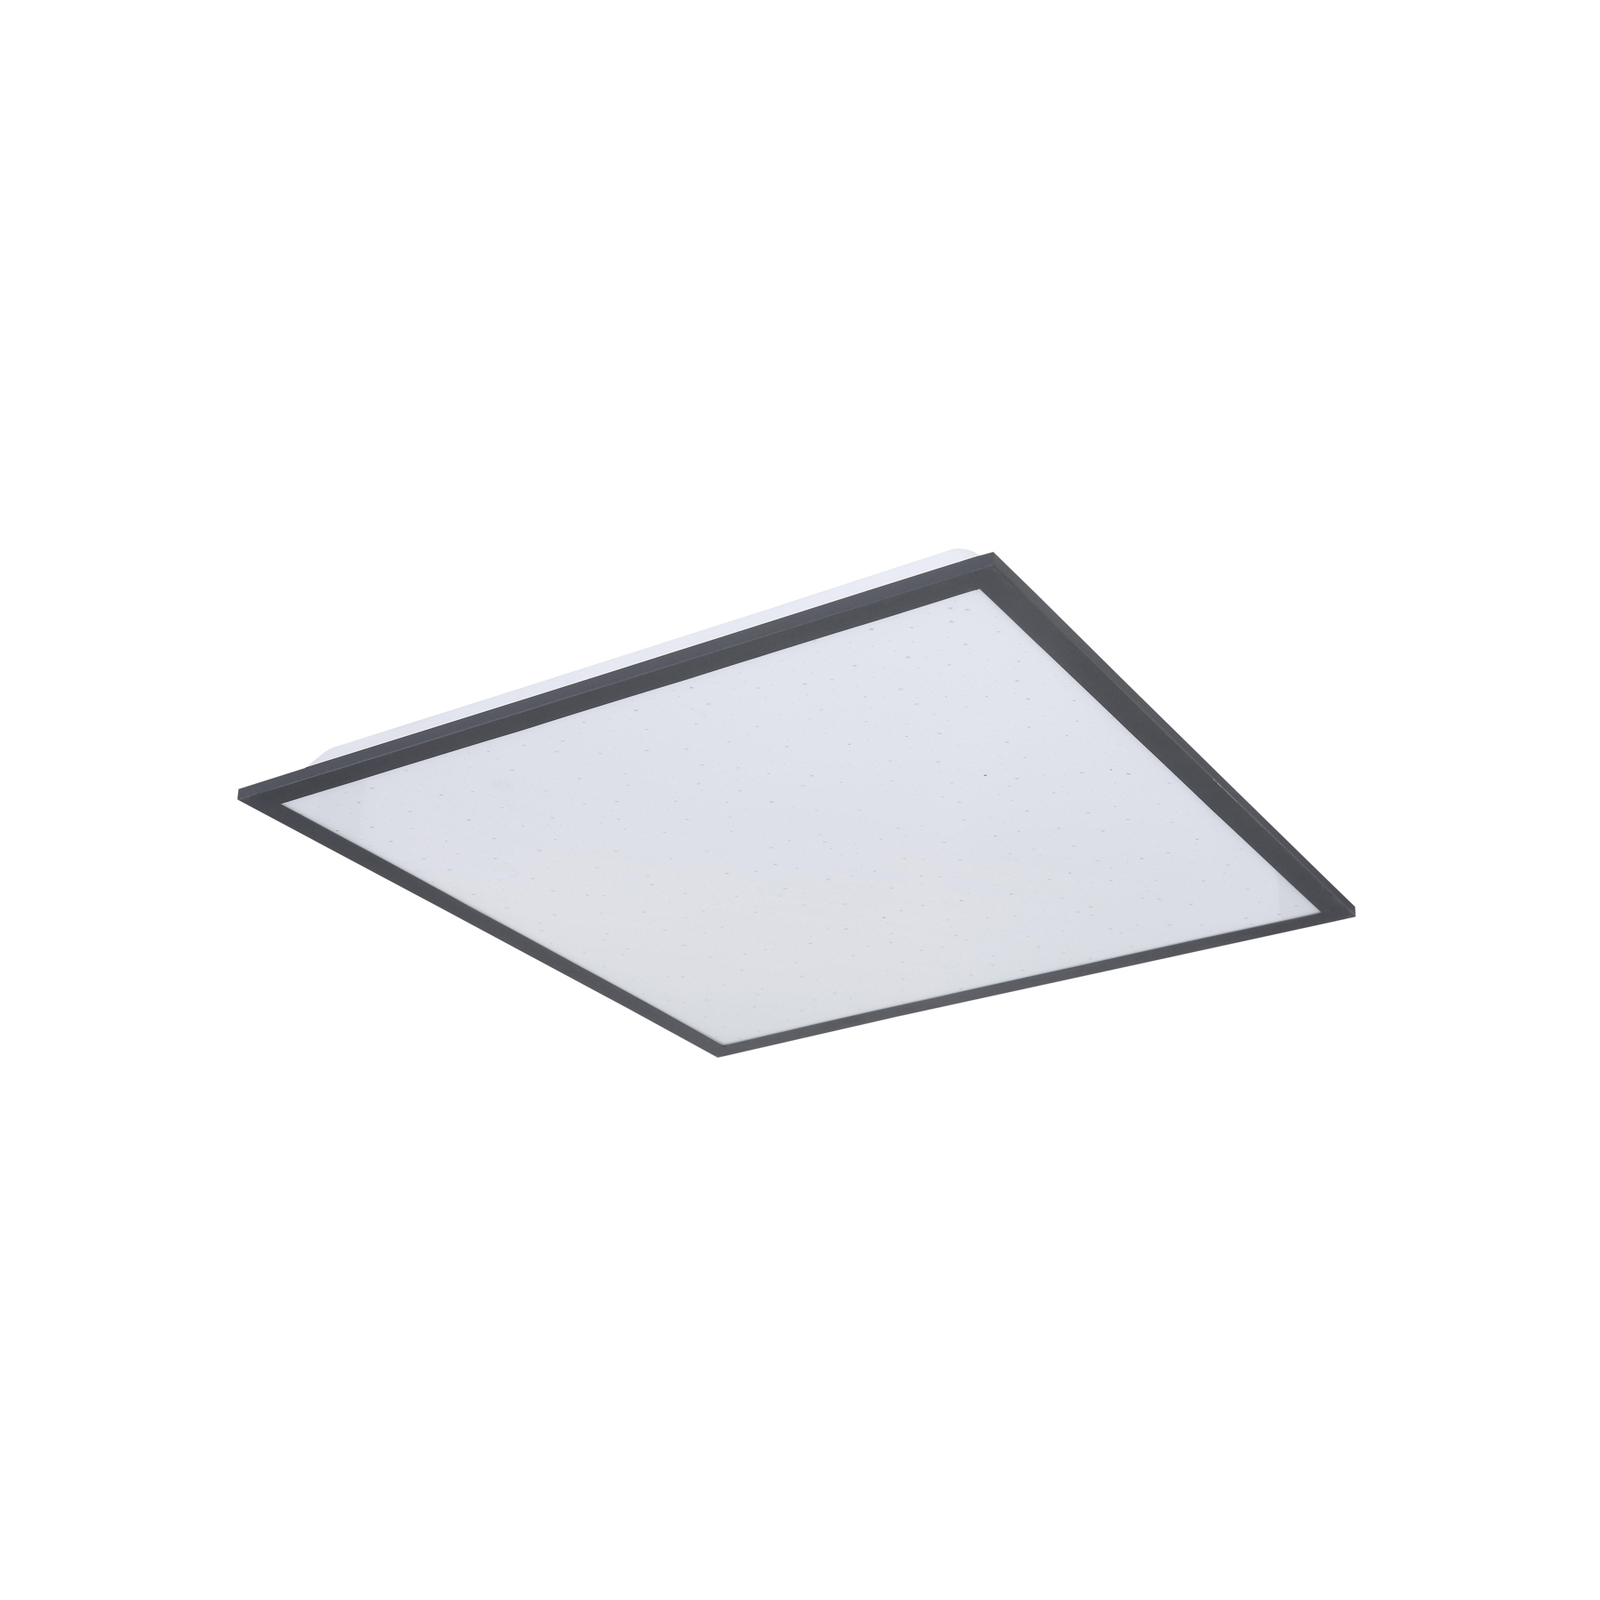 LED-Deckenleuchte Doro, Länge 45 cm, weiß/grafit, Aluminium